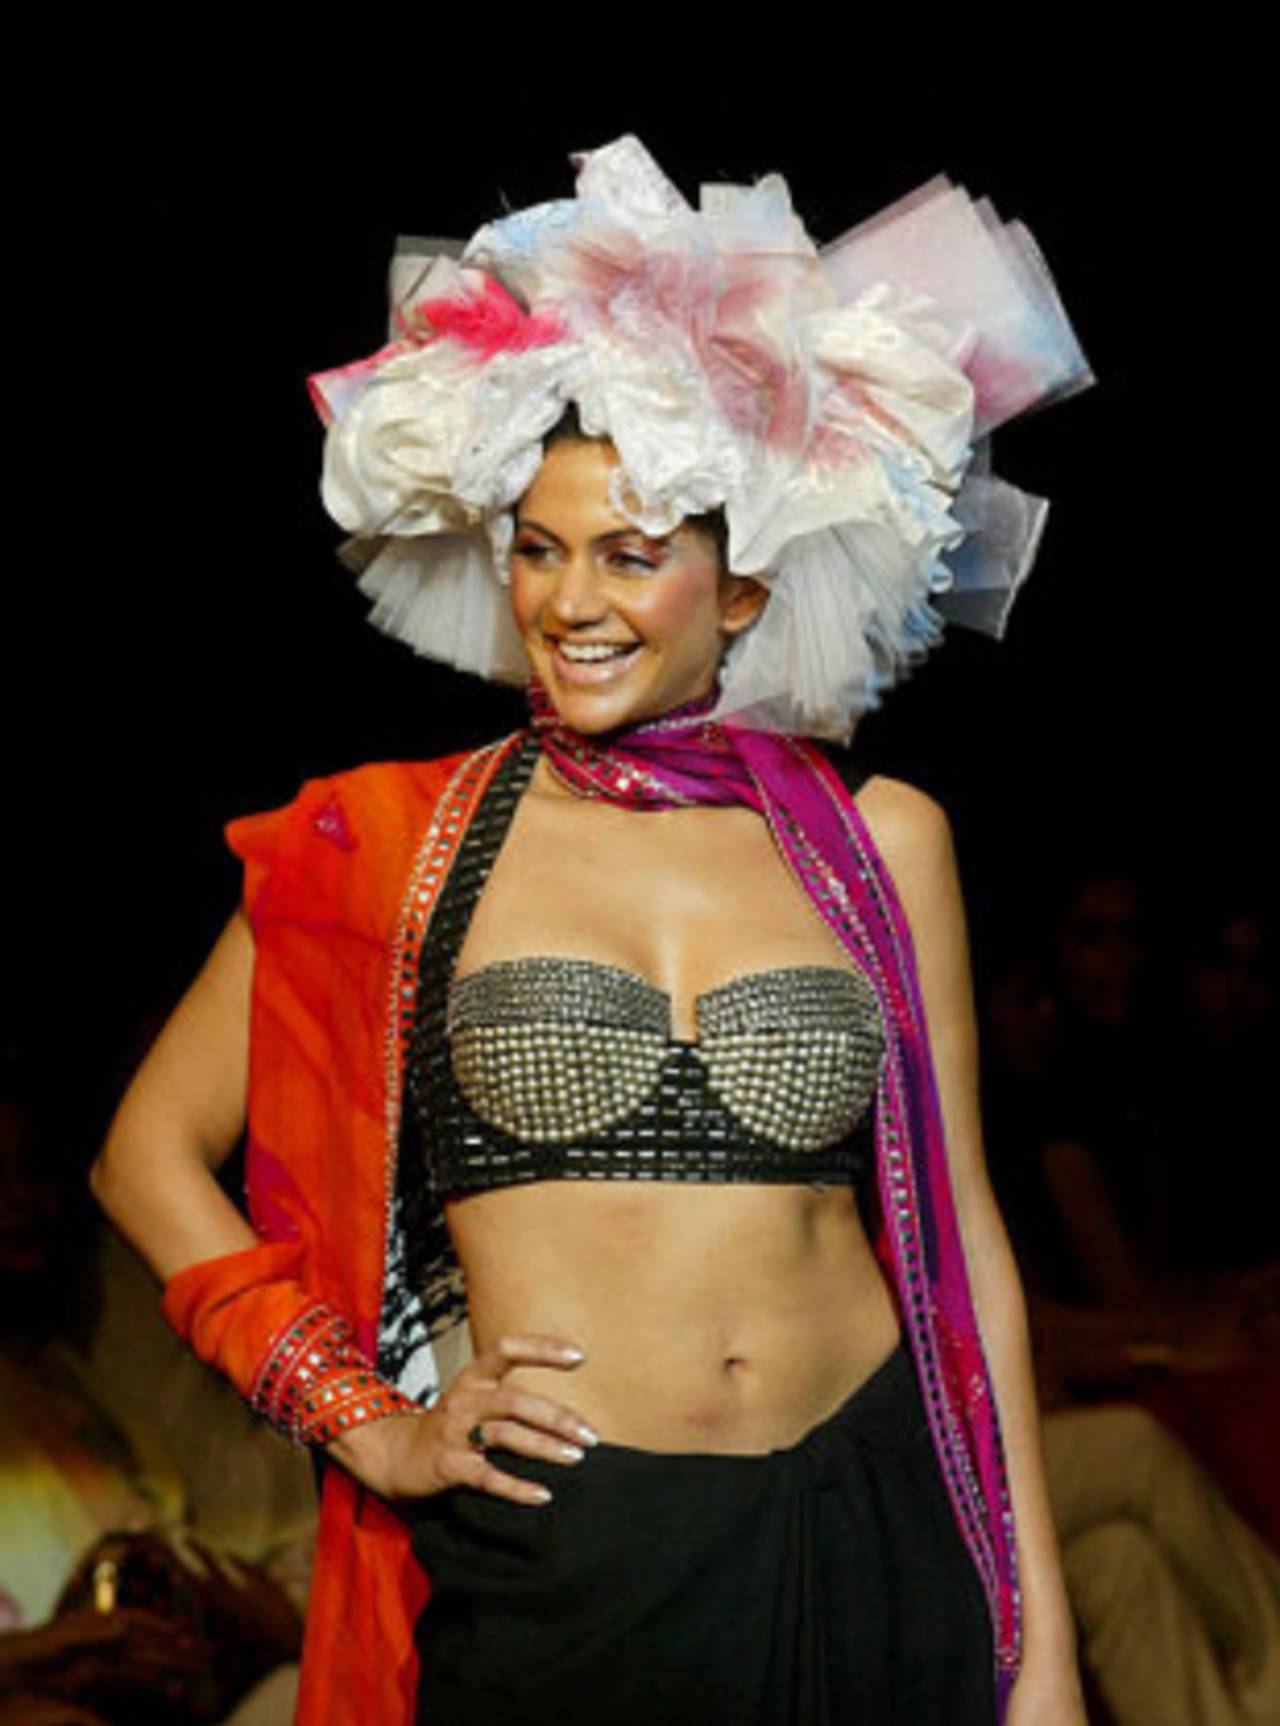 Mandira Bedi at a fashion show, April 22, 2005